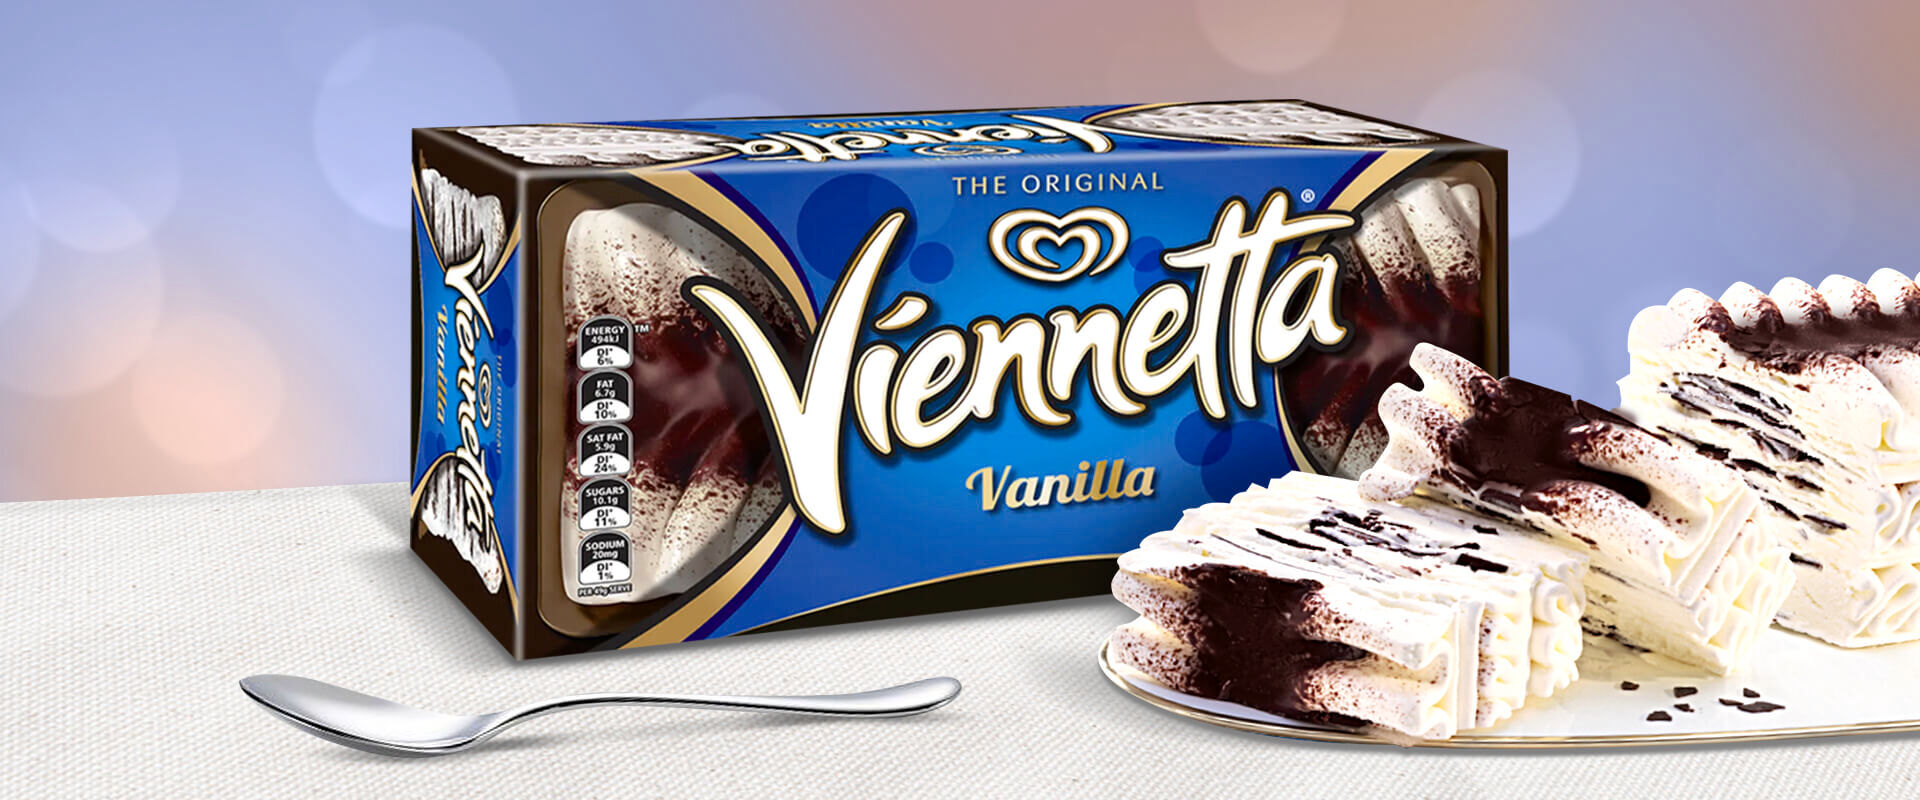 Viennetta Ice Cream